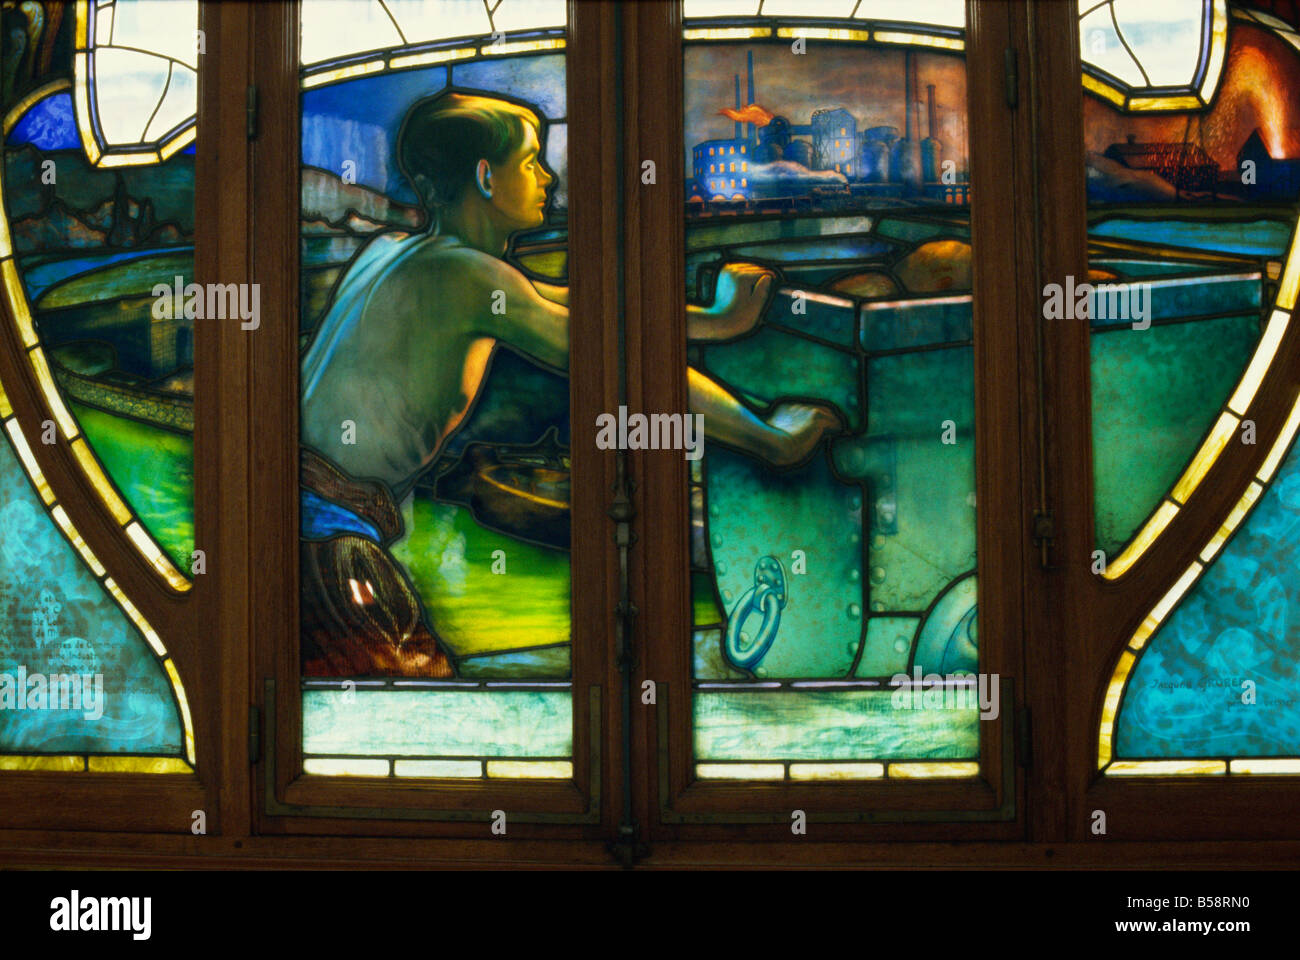 Détail de vitraux Art Nouveau, chambres de commerce, Nancy, Lorraine, France, Europe Banque D'Images